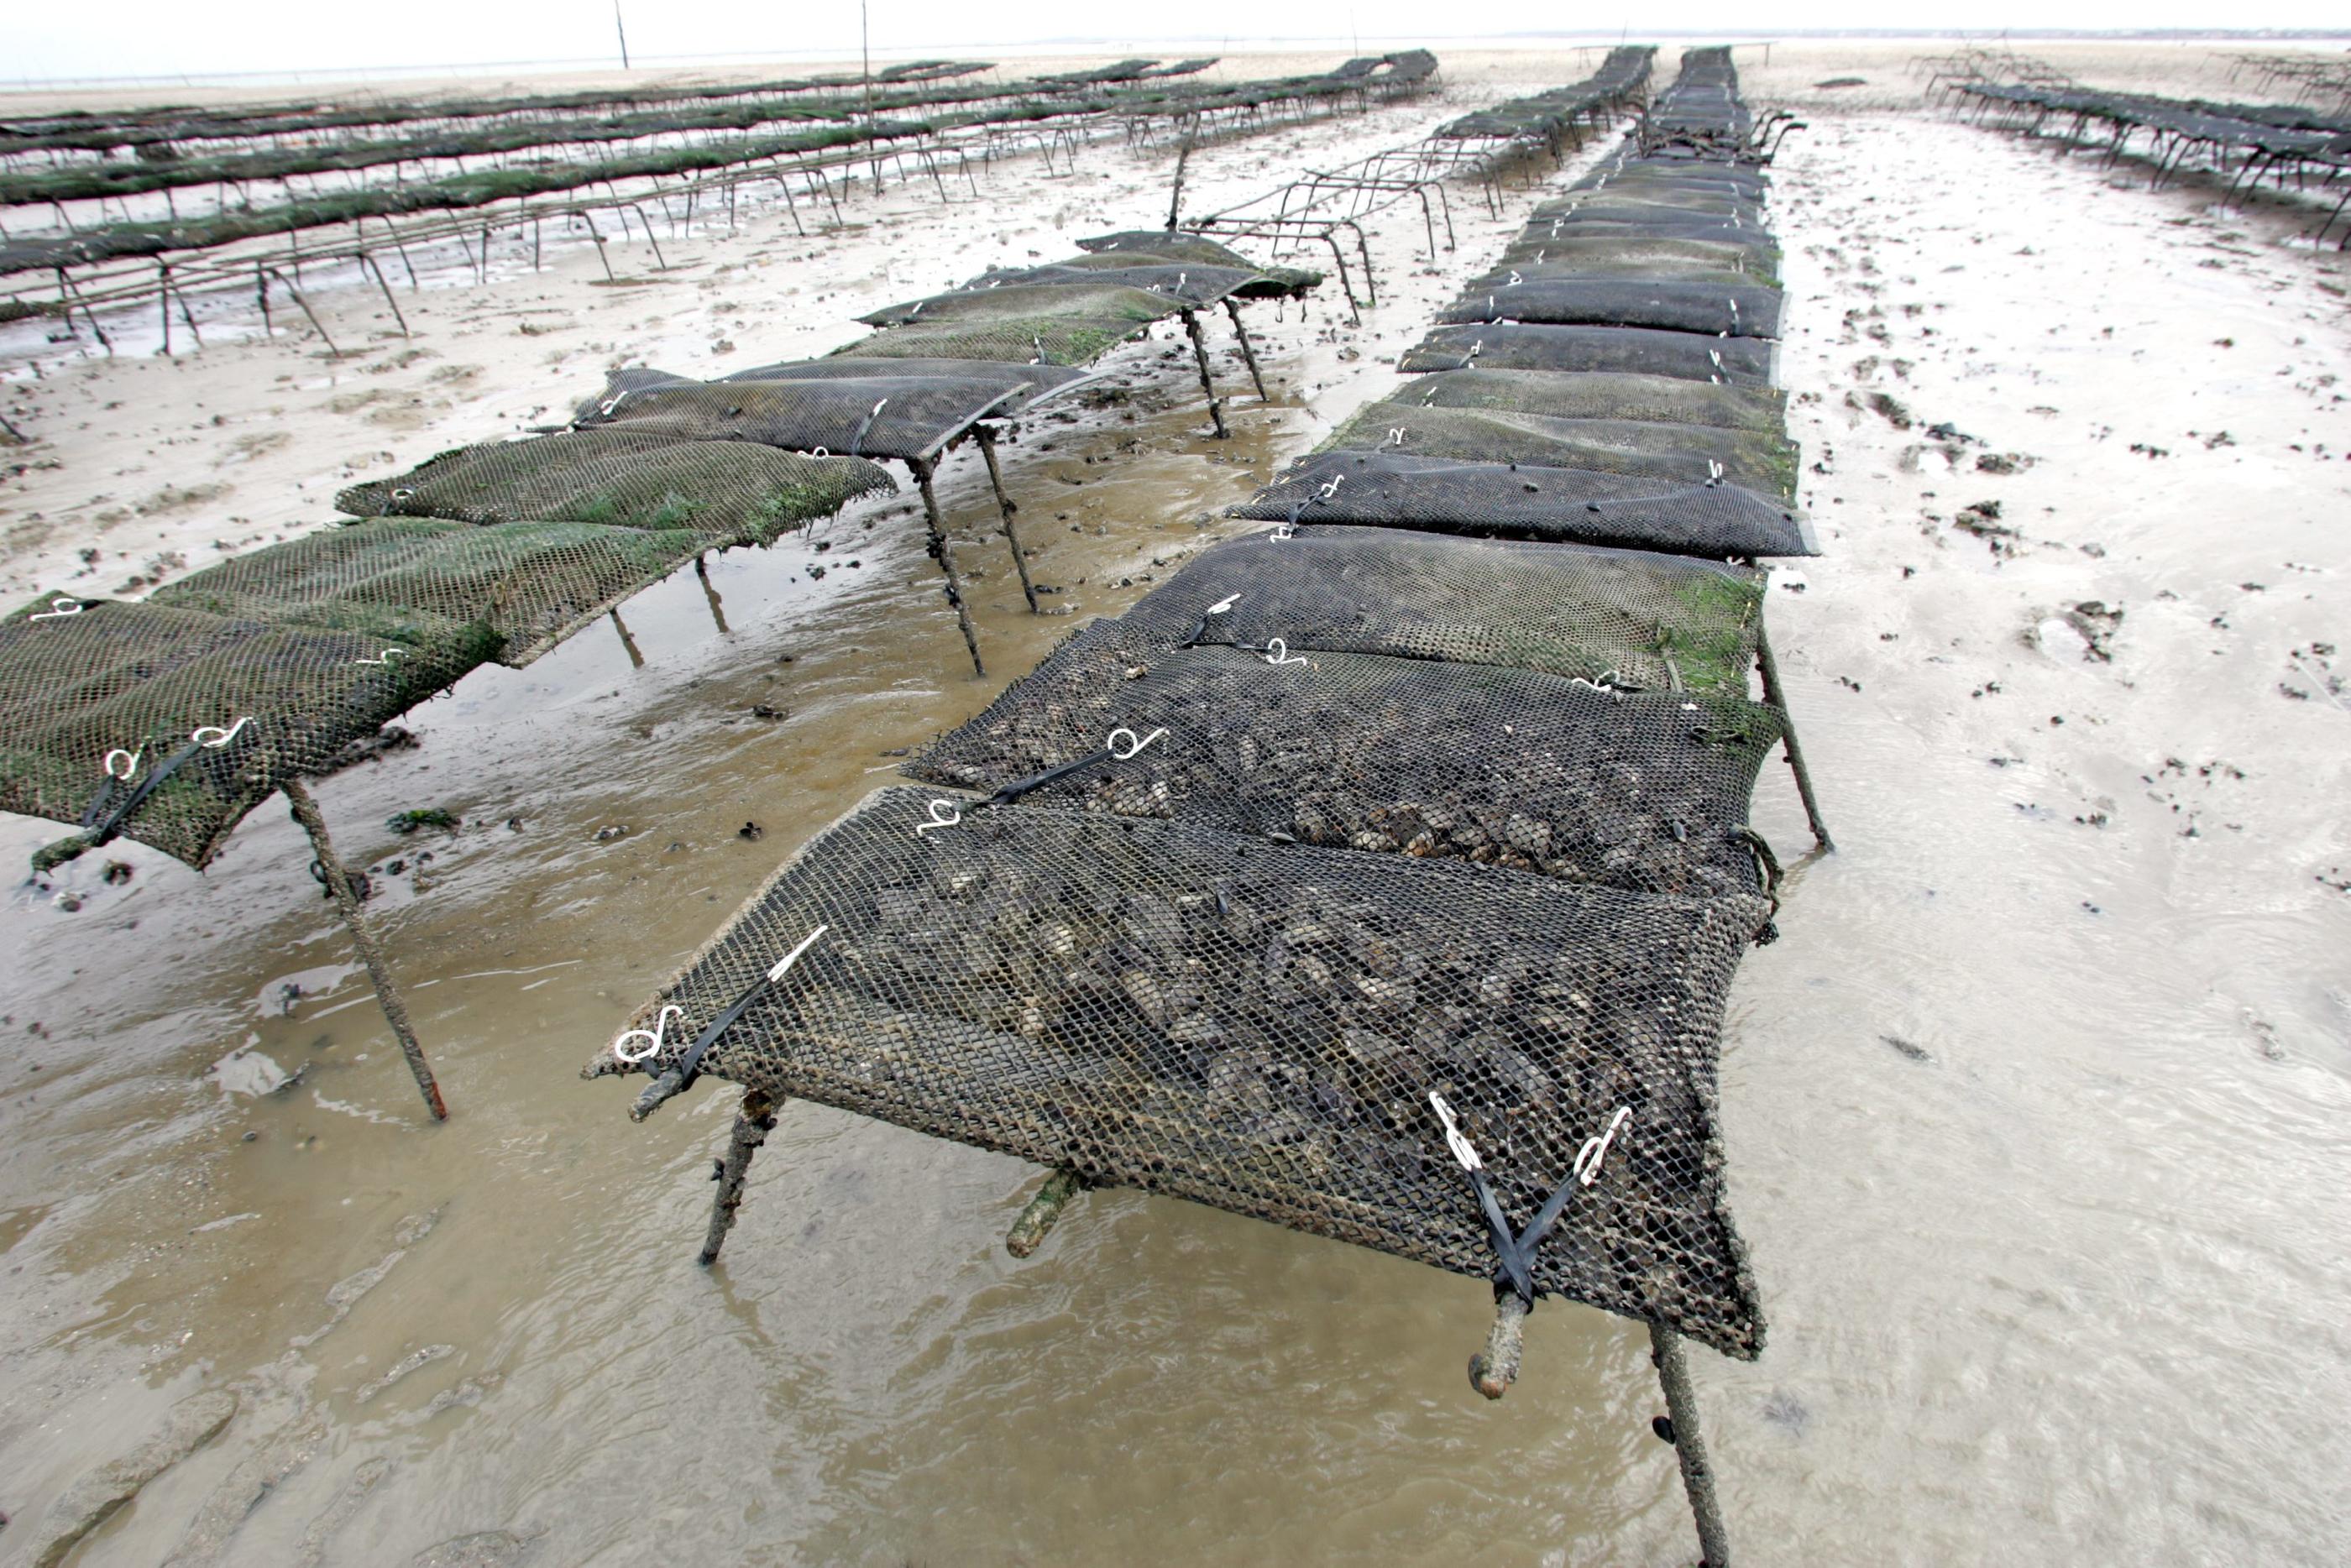 L'ostréiculture du bassin de Marennes-Oléron, près de la Rochelle (Charente-Maritime), ne commercialisera plus d'huîtres affinées dans les claires entre le 1er juin et le 31 août. LP/Olivier Lejeune